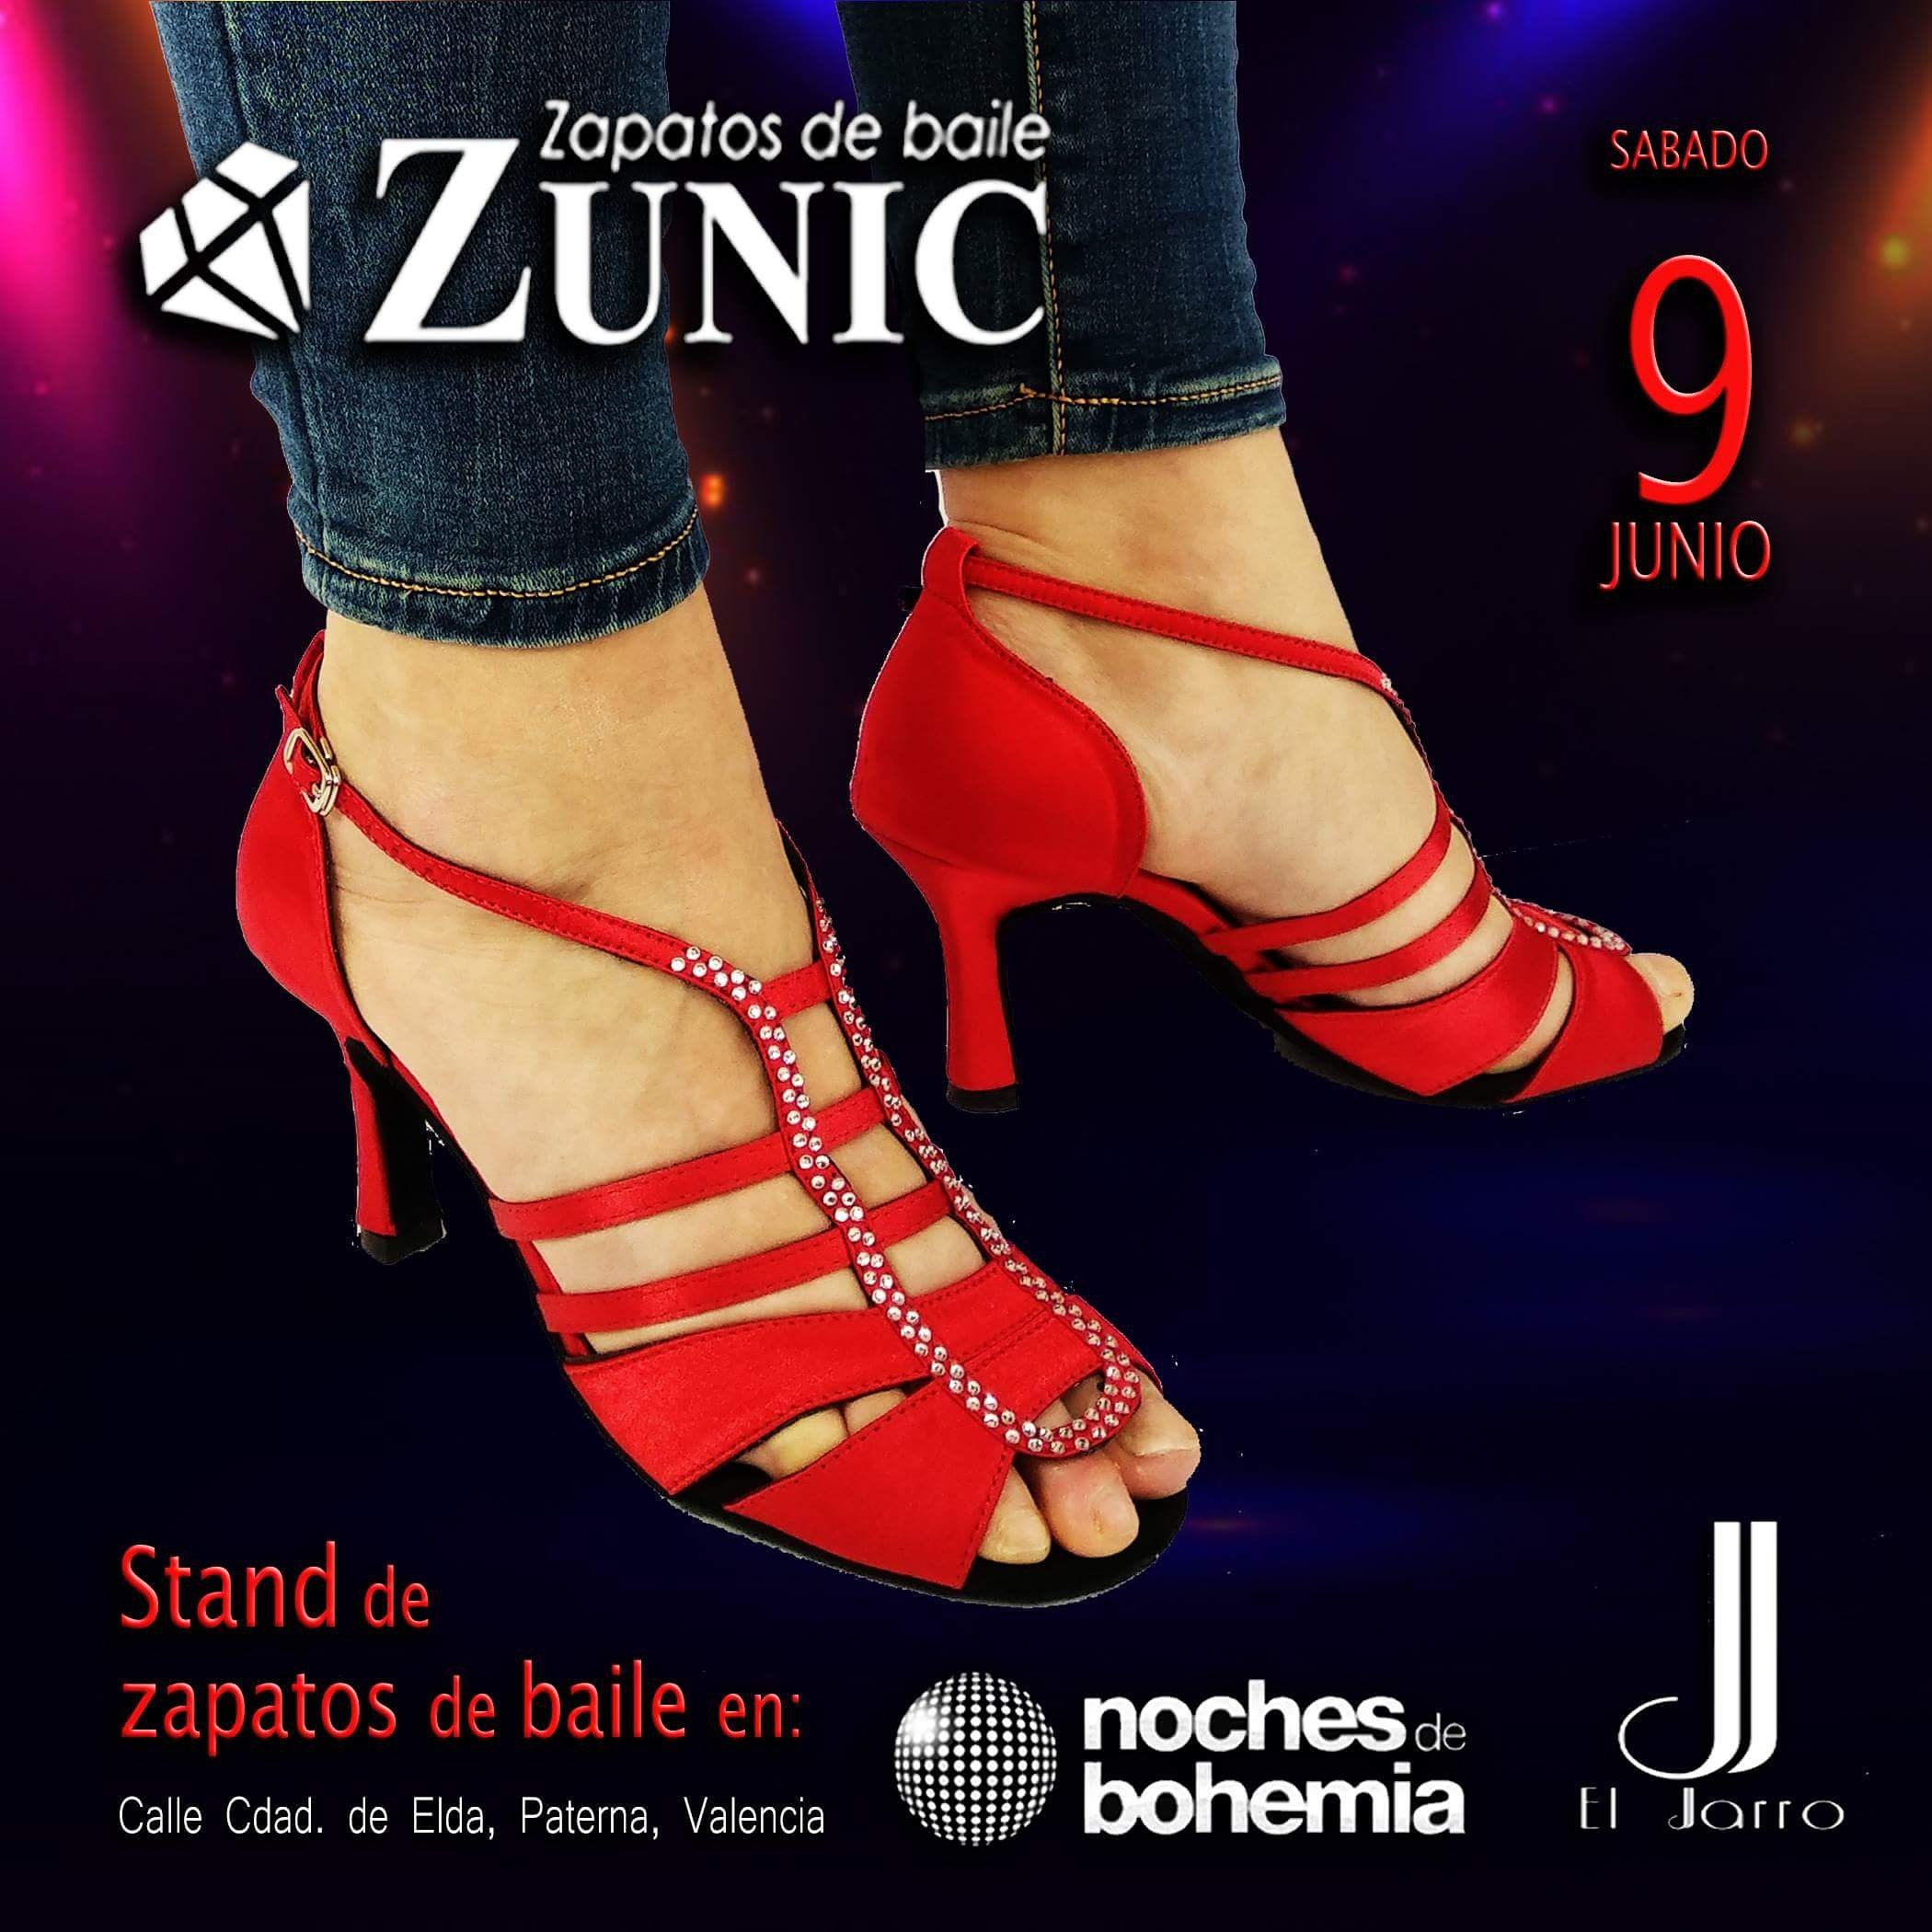 Agrícola Velo agitación Zapatos de baile Zunic on Twitter: "🔝🔝 Solo tus #Zunic podrán seguirte el  ritmo 🎶 Consigue este placer que solo las mujeres podemos entender 😍💕  📢📢 STAND de #zapatosdebaile en #valencia .